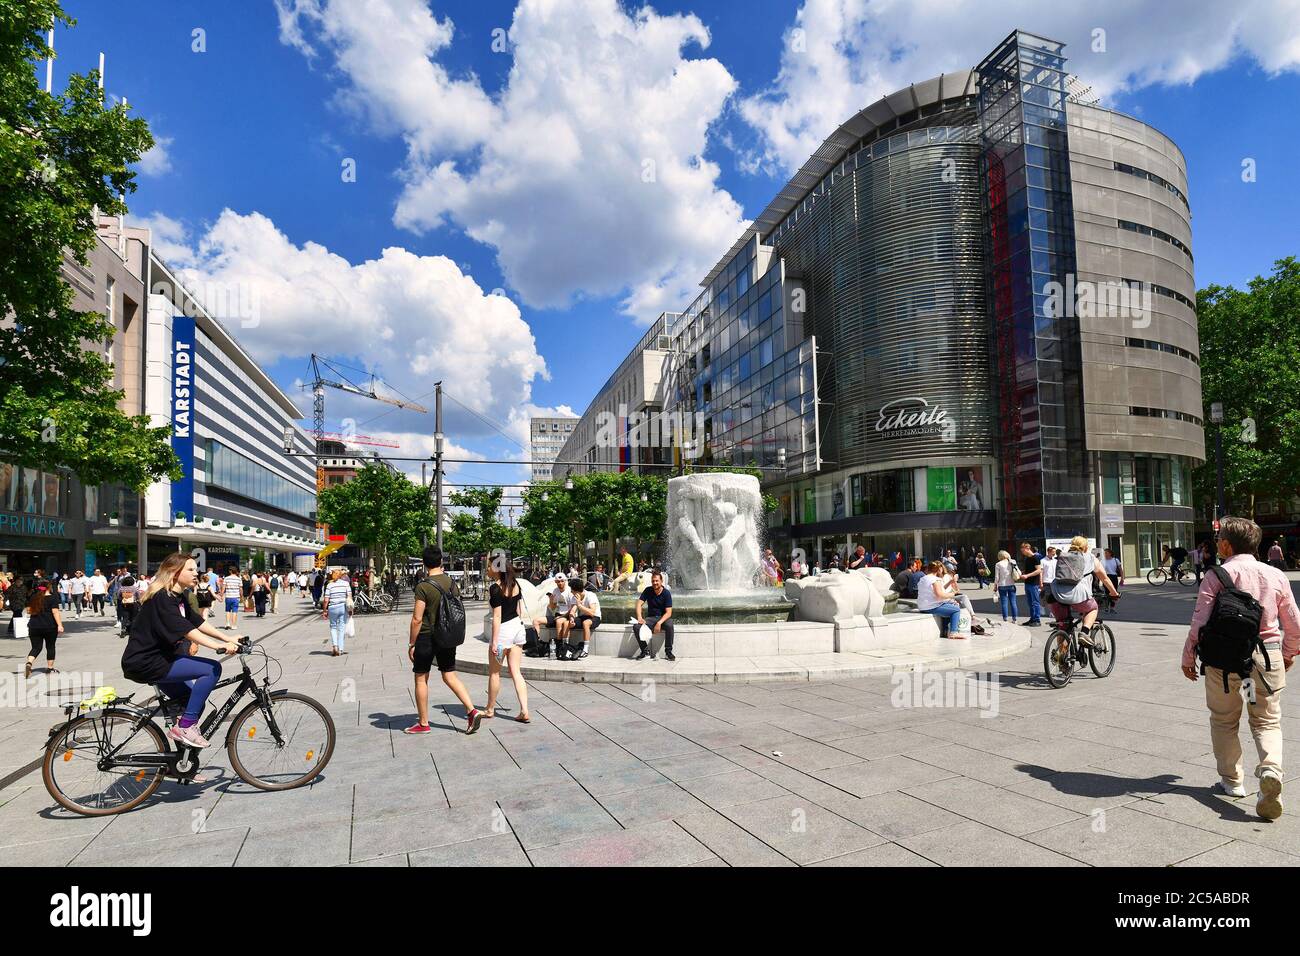 Frankfurt am Main, Deutschland - Juni 2020: Haupteinkaufsstraße Zeil mit Brockhaus-Brunnen an einem sonnigen Tag voller Menschen Stockfoto